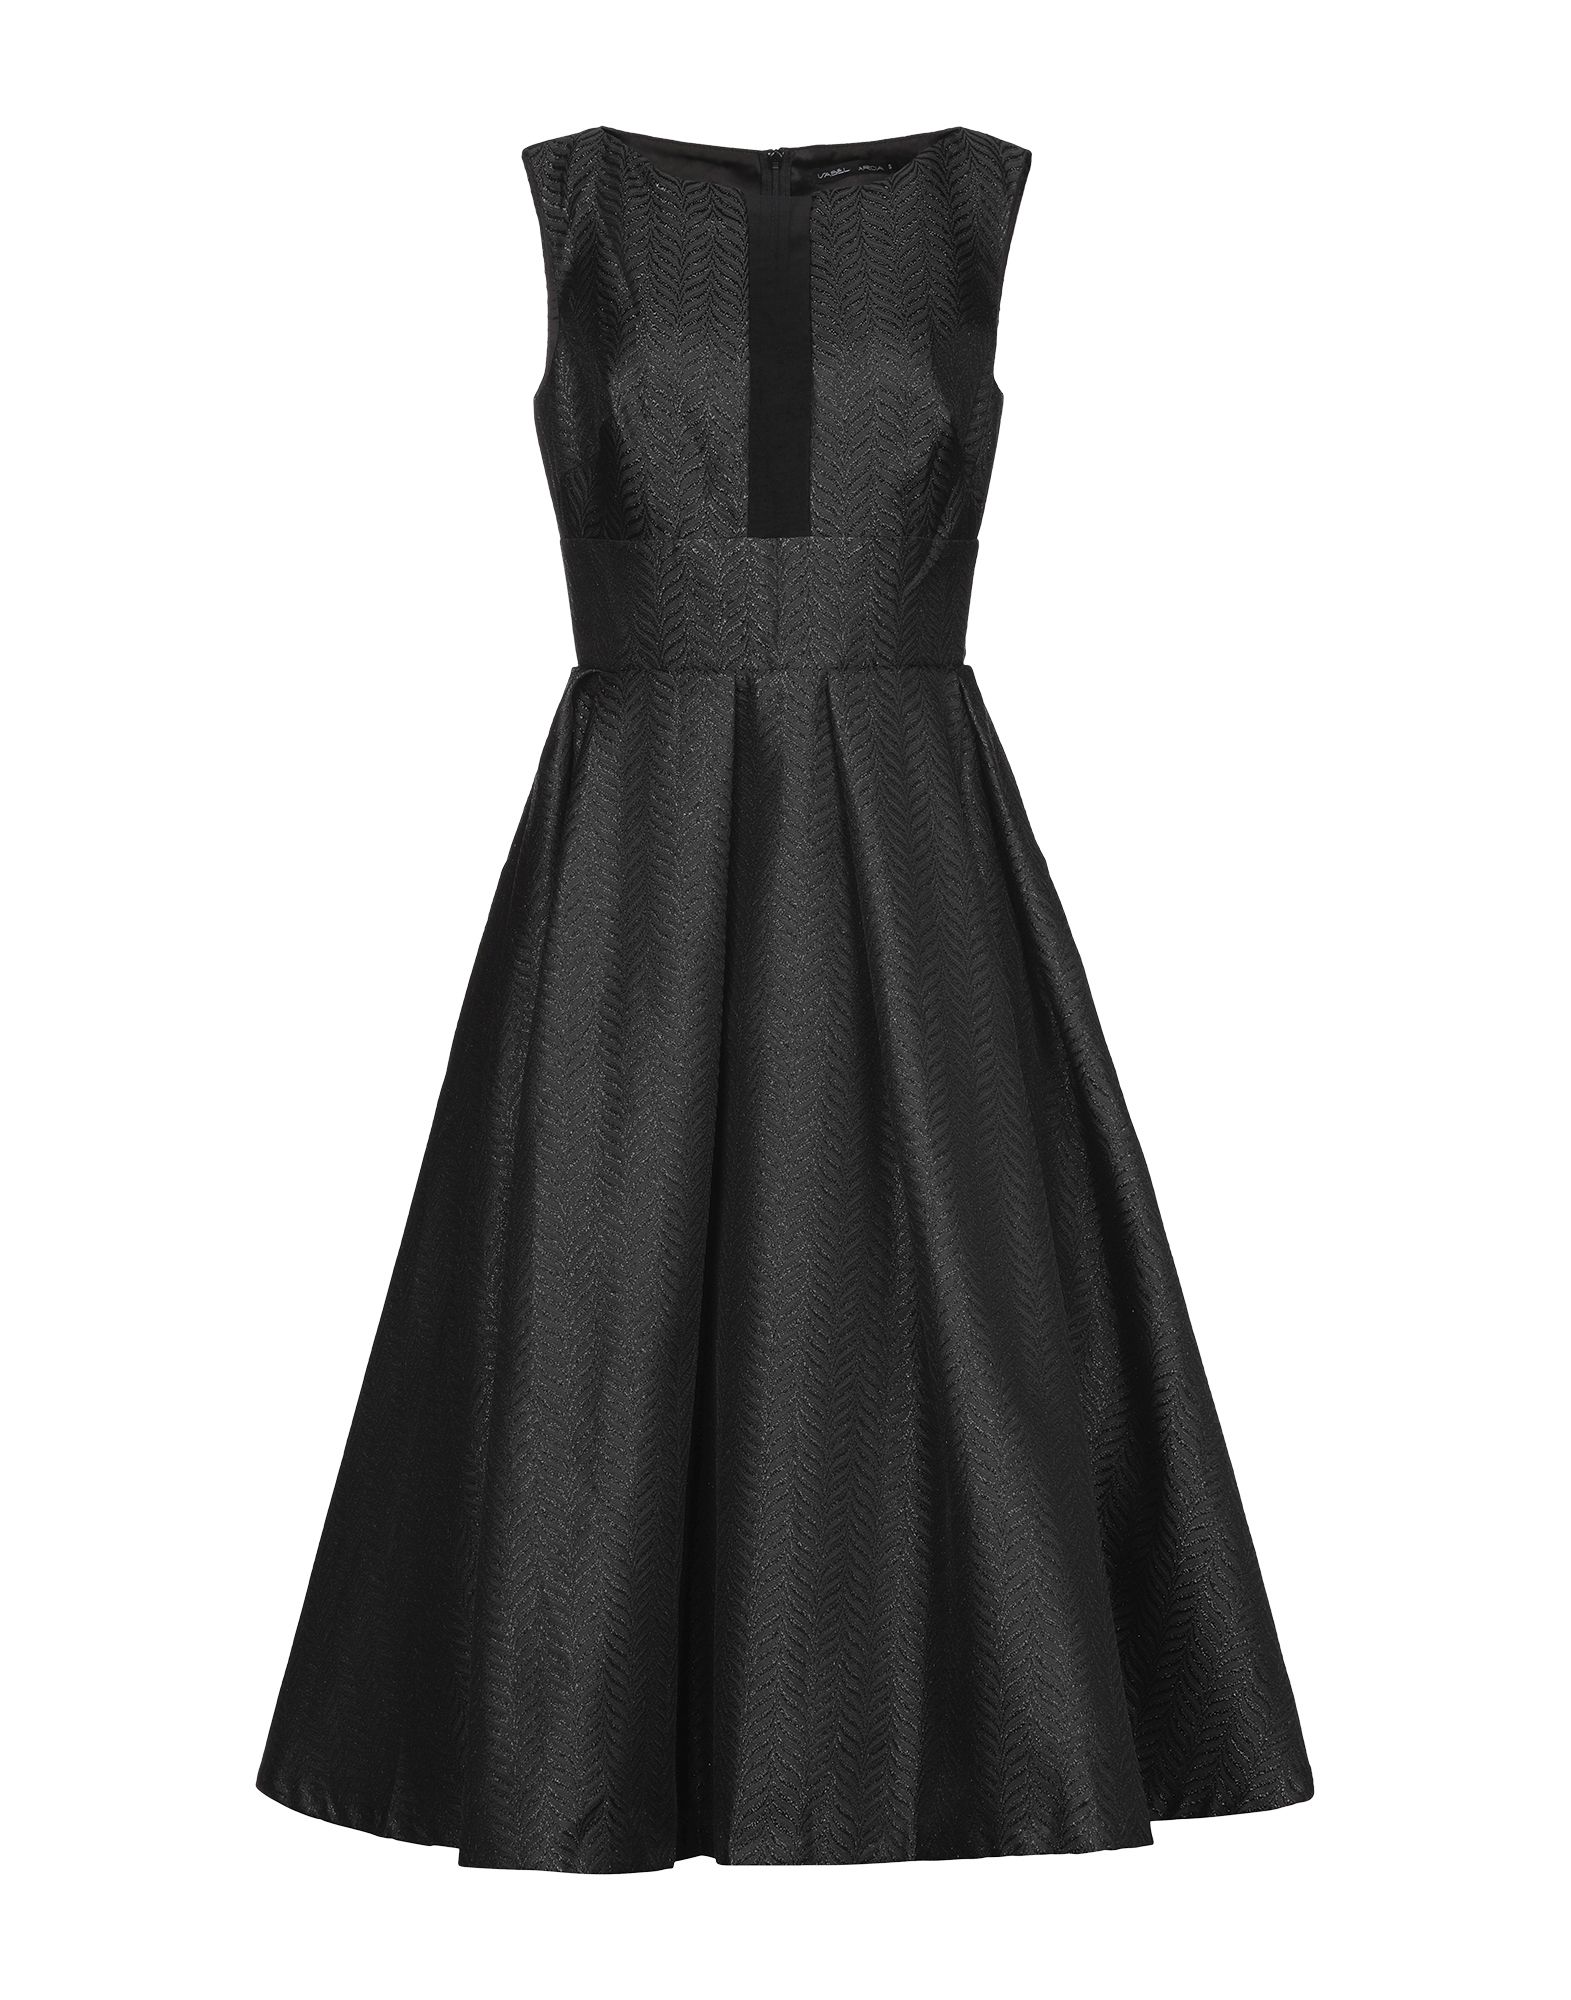 Платье до колена  - Черный цвет